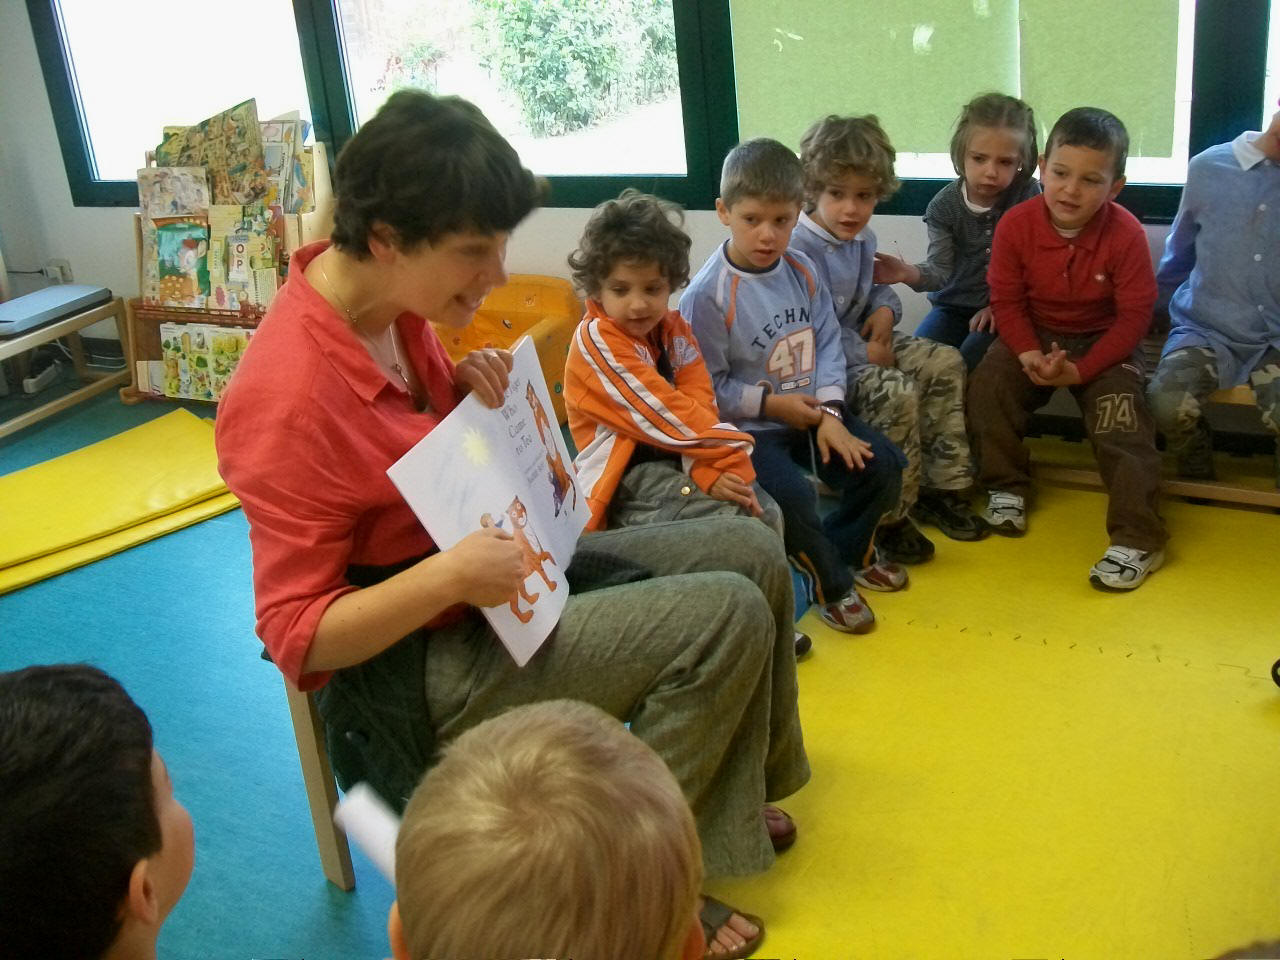 foto dell'insegnante che legge la storia  al gruppo di bambini